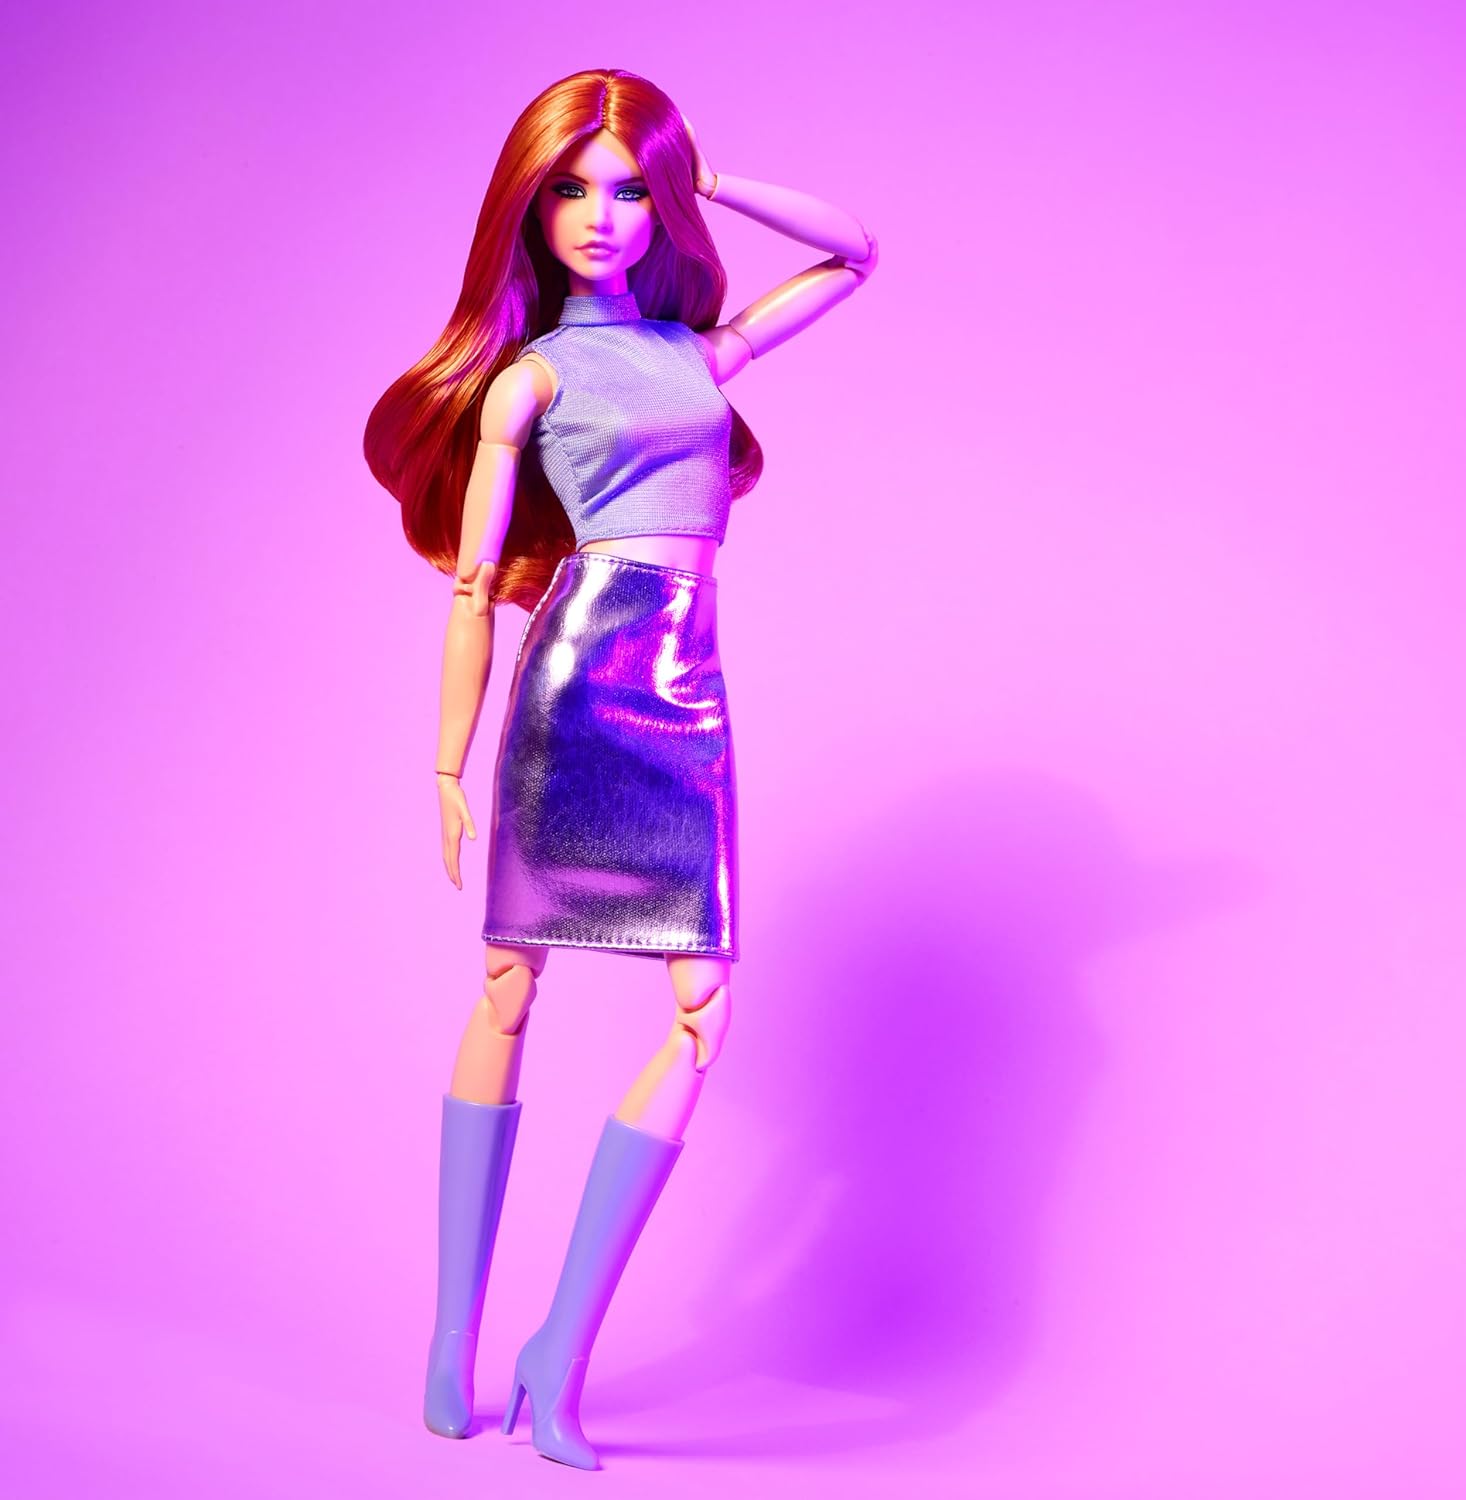 دمية Barbie Looks، رقم 20 القابلة للتجميع، ذات شعر أحمر وأزياء Y2K الحديثة، وقميص أرجواني وتنورة من الجلد الصناعي مع حذاء يصل إلى الركبة